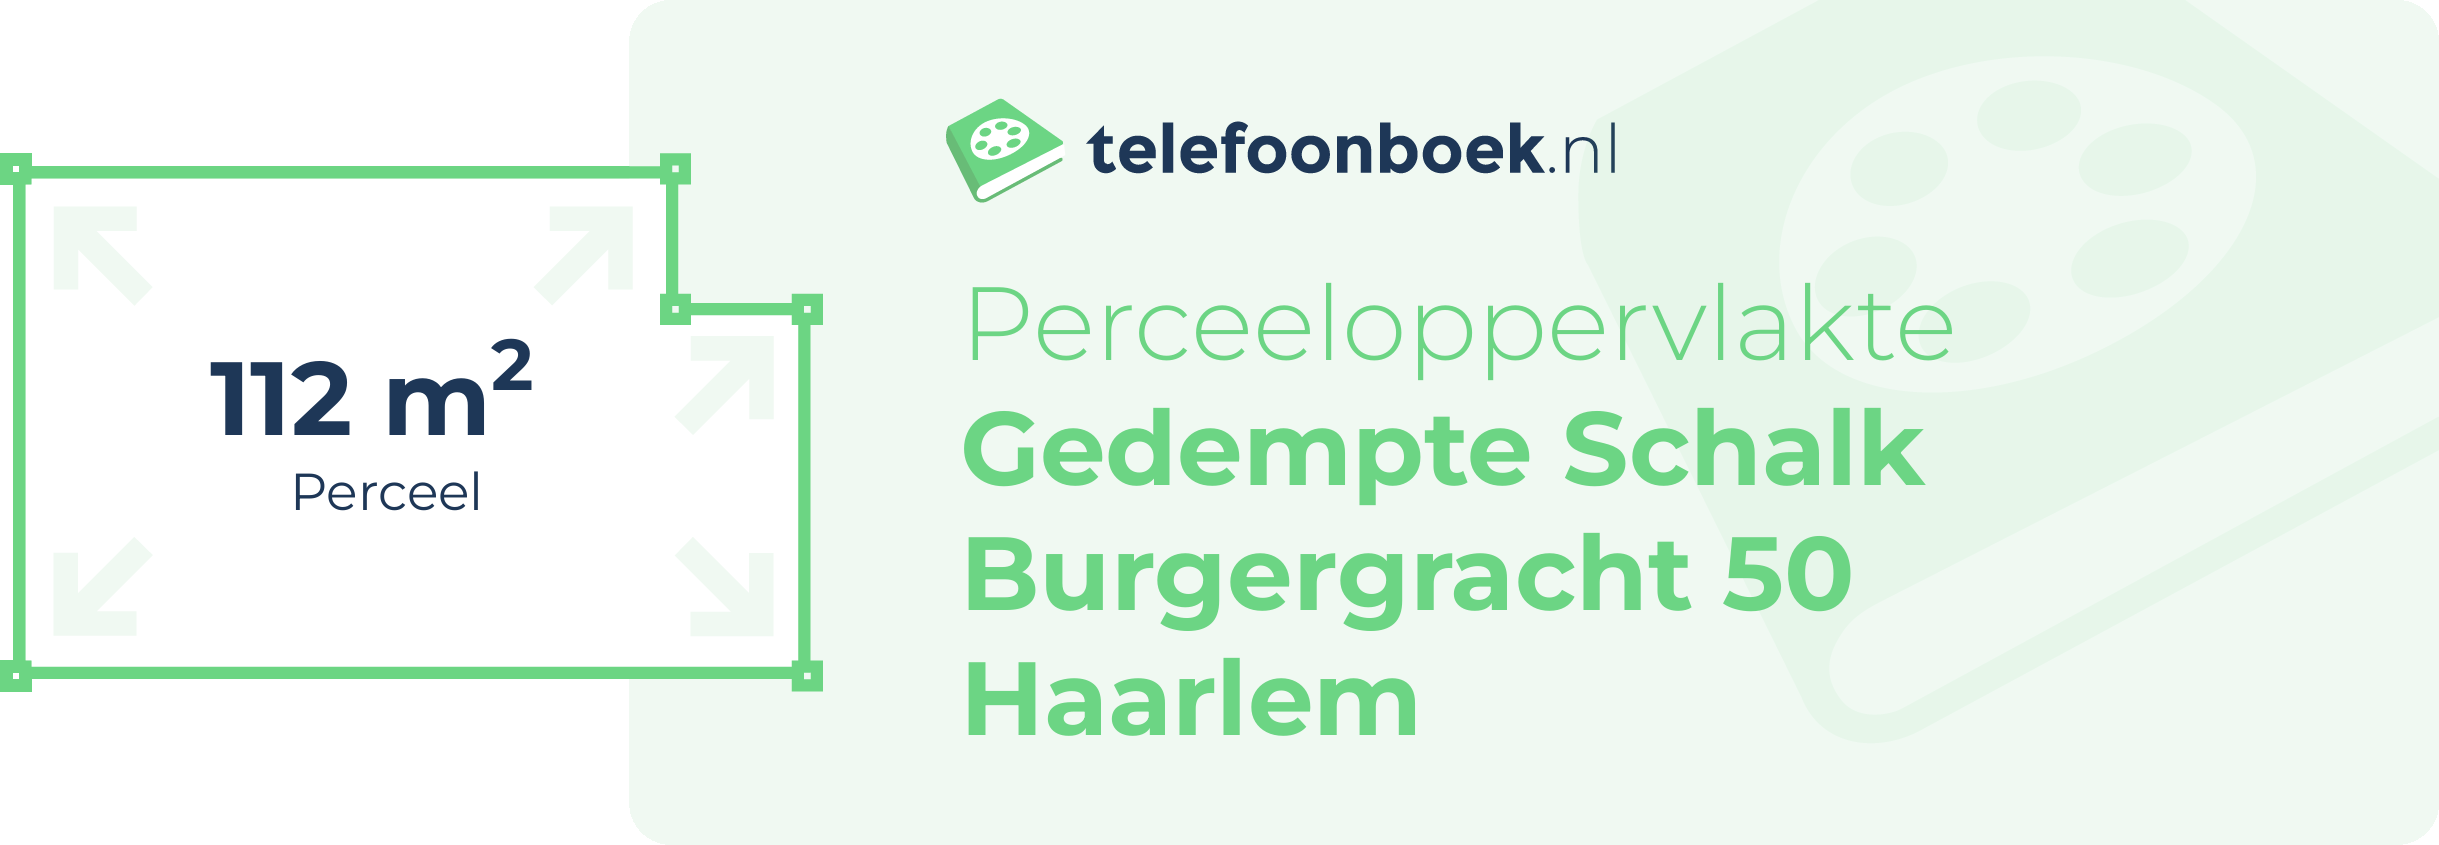 Perceeloppervlakte Gedempte Schalk Burgergracht 50 Haarlem